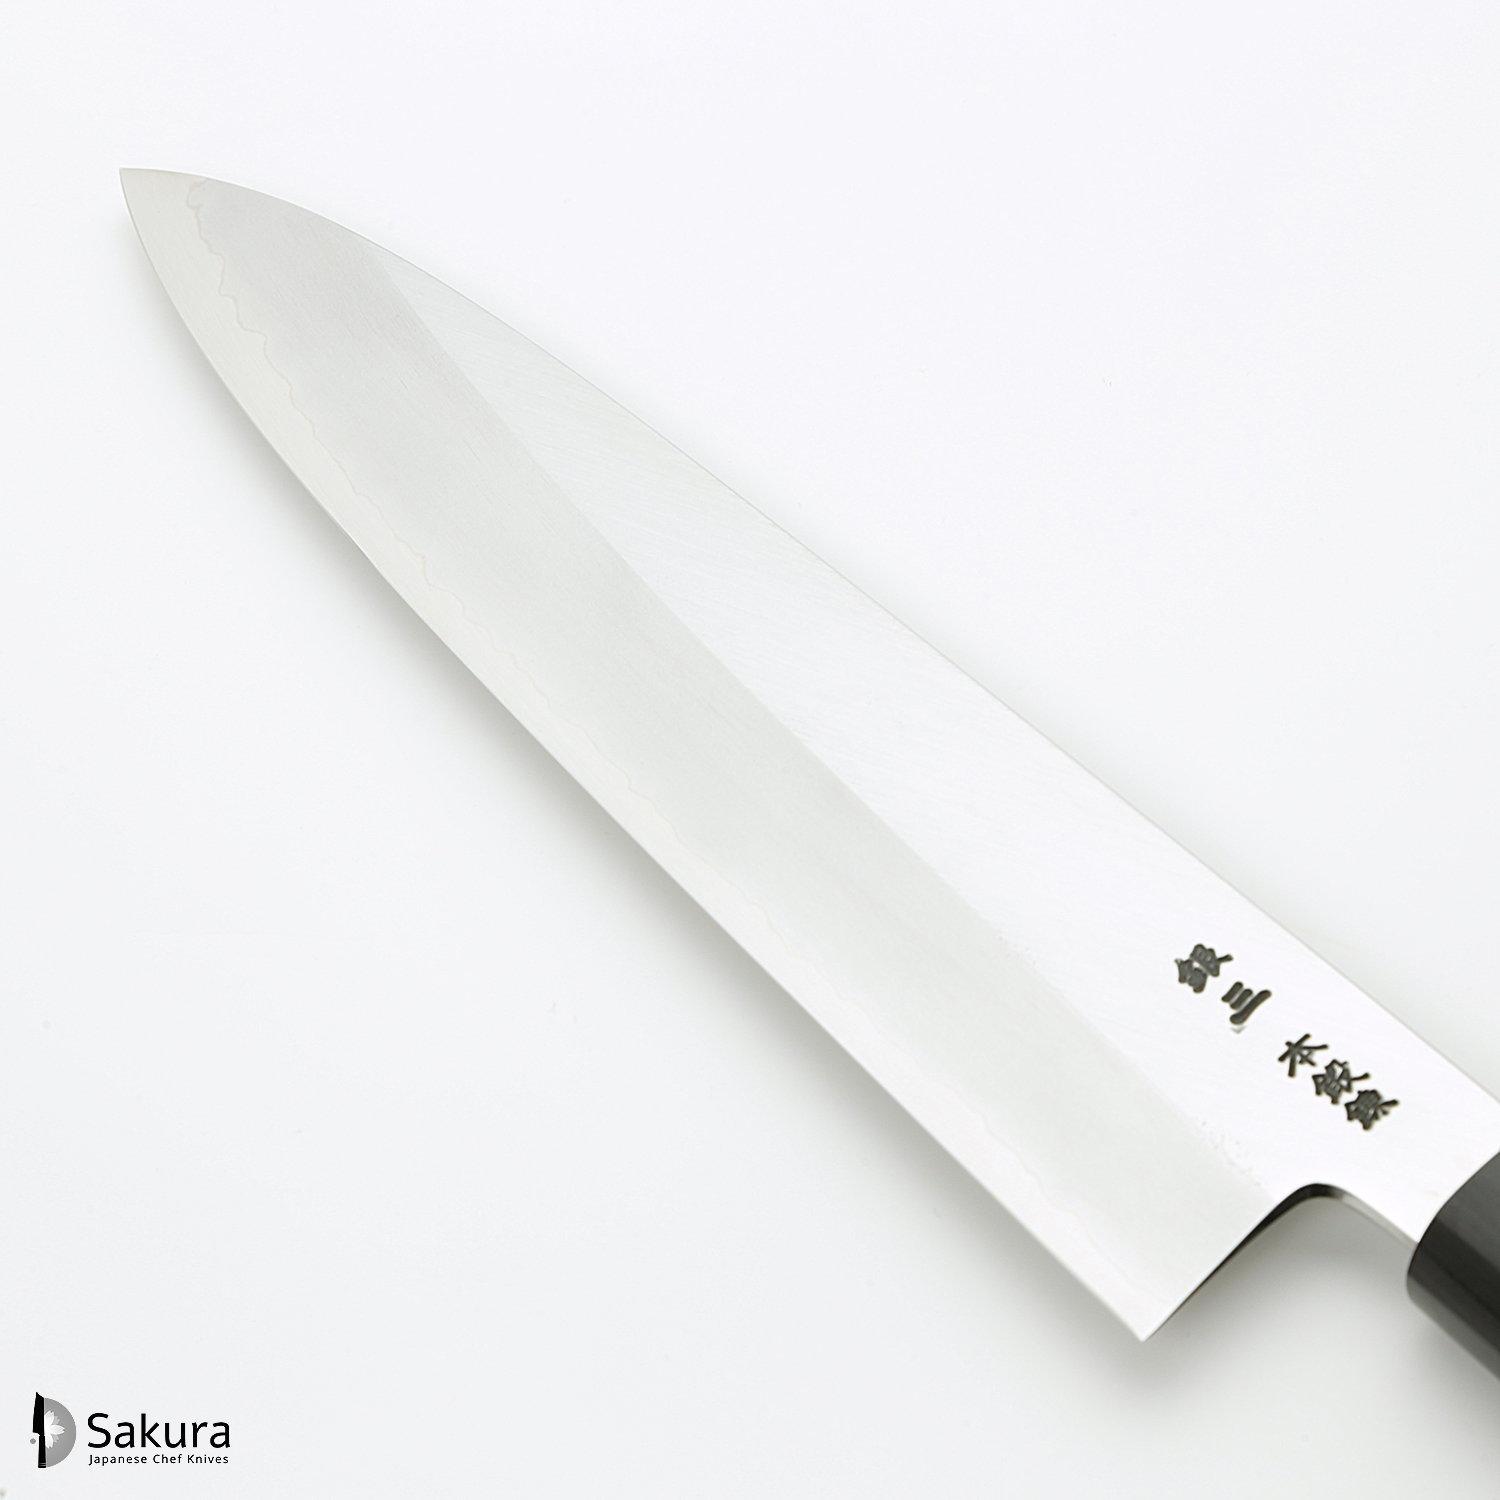 סכין שף רב-תכליתית גִּיוּטוֹ 240מ״מ מחושלת בעבודת יד 3 שכבות: פלדת פחמן יפנית מתקדמת מסוג Ginsan Silver#3 עטופה פלדת אל-חלד בגימור מט מלוטש גימור מט מלוטש האדו יפן